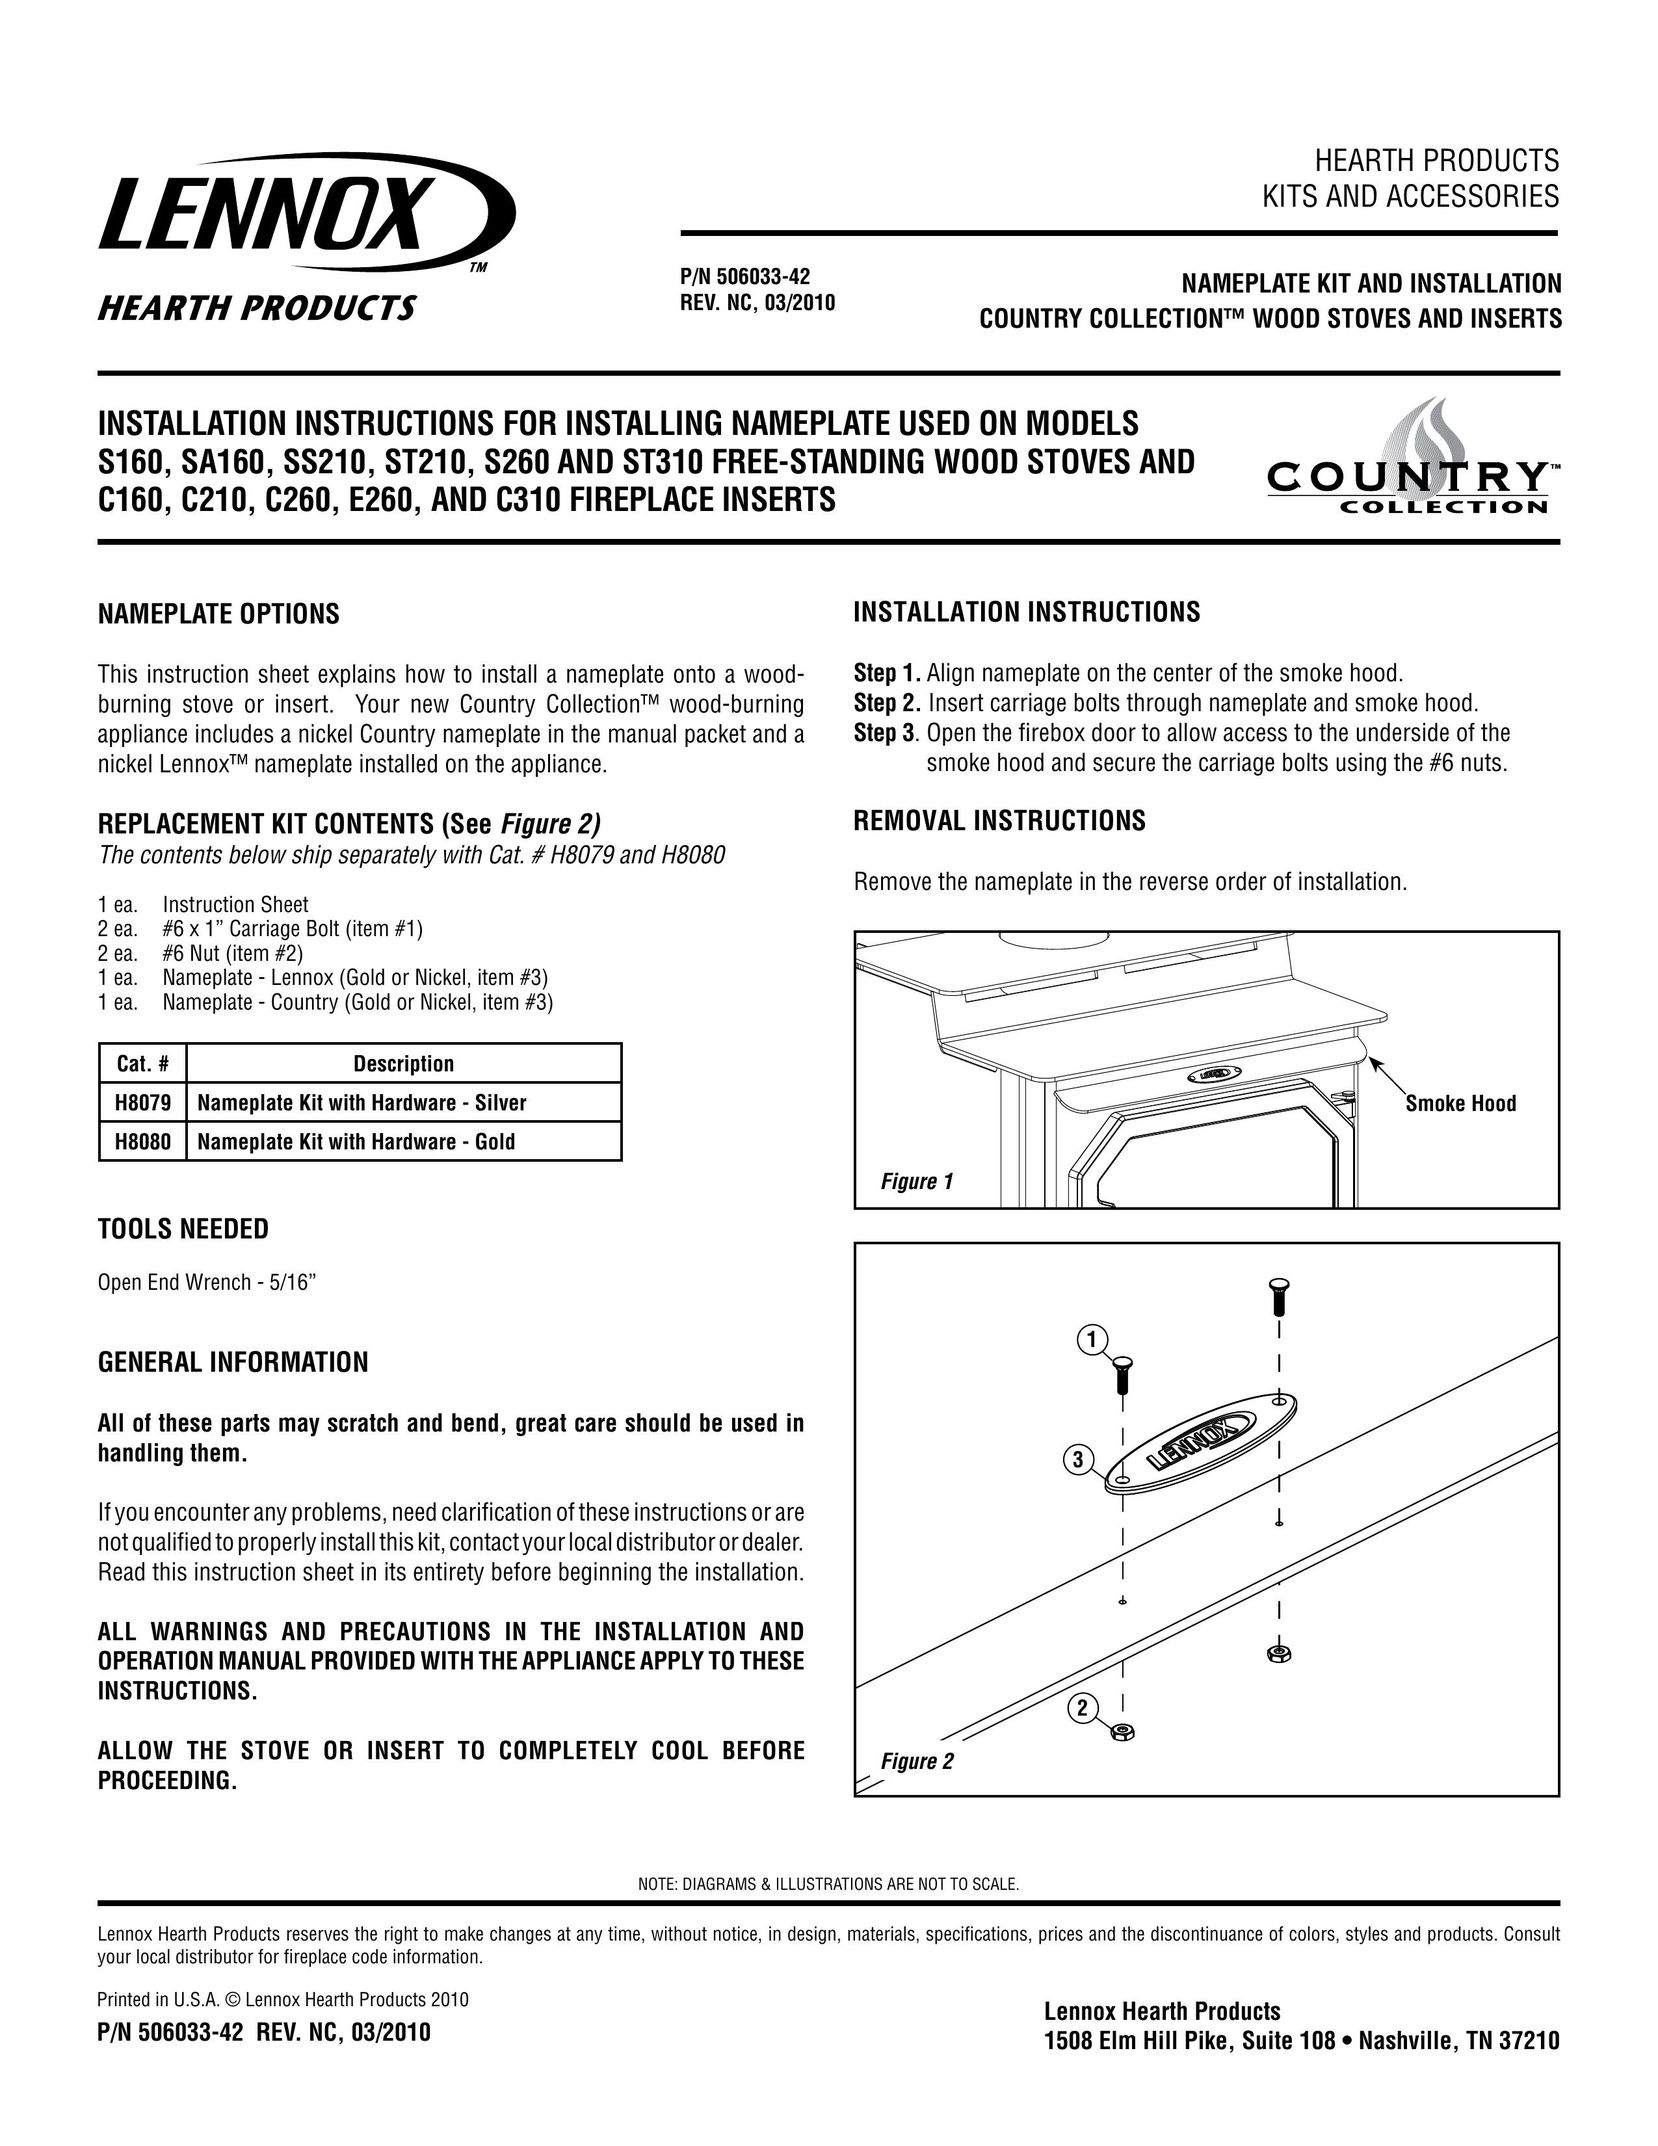 Lennox Hearth SA160 Stove User Manual